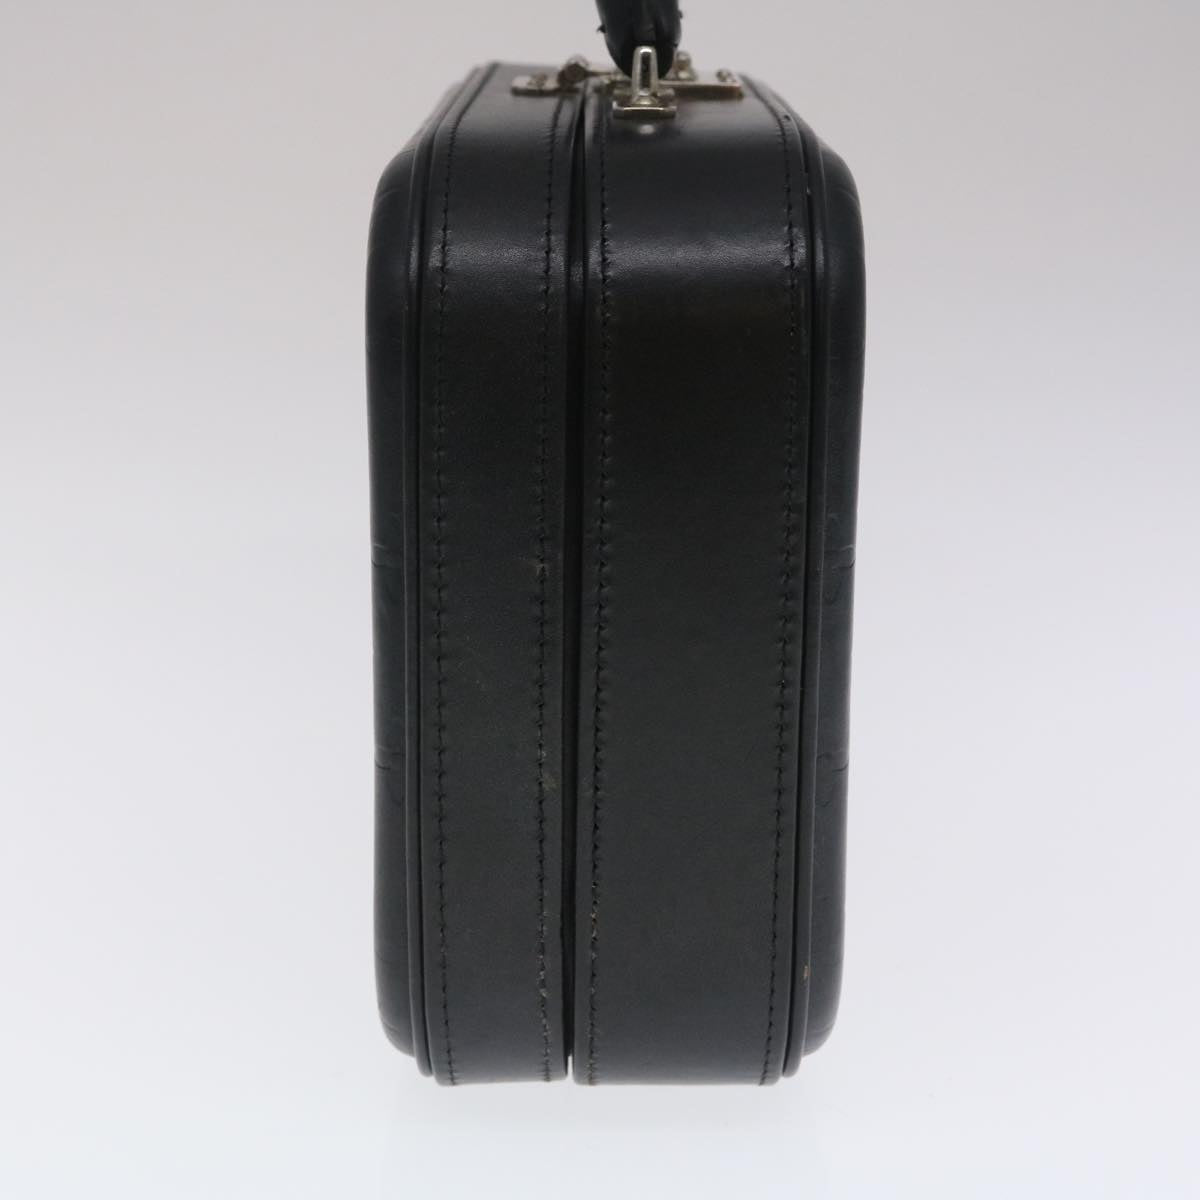 LOUIS VUITTON Monogram Glace Valisette PM Hand Bag Black M92235 LV Auth pt1110A